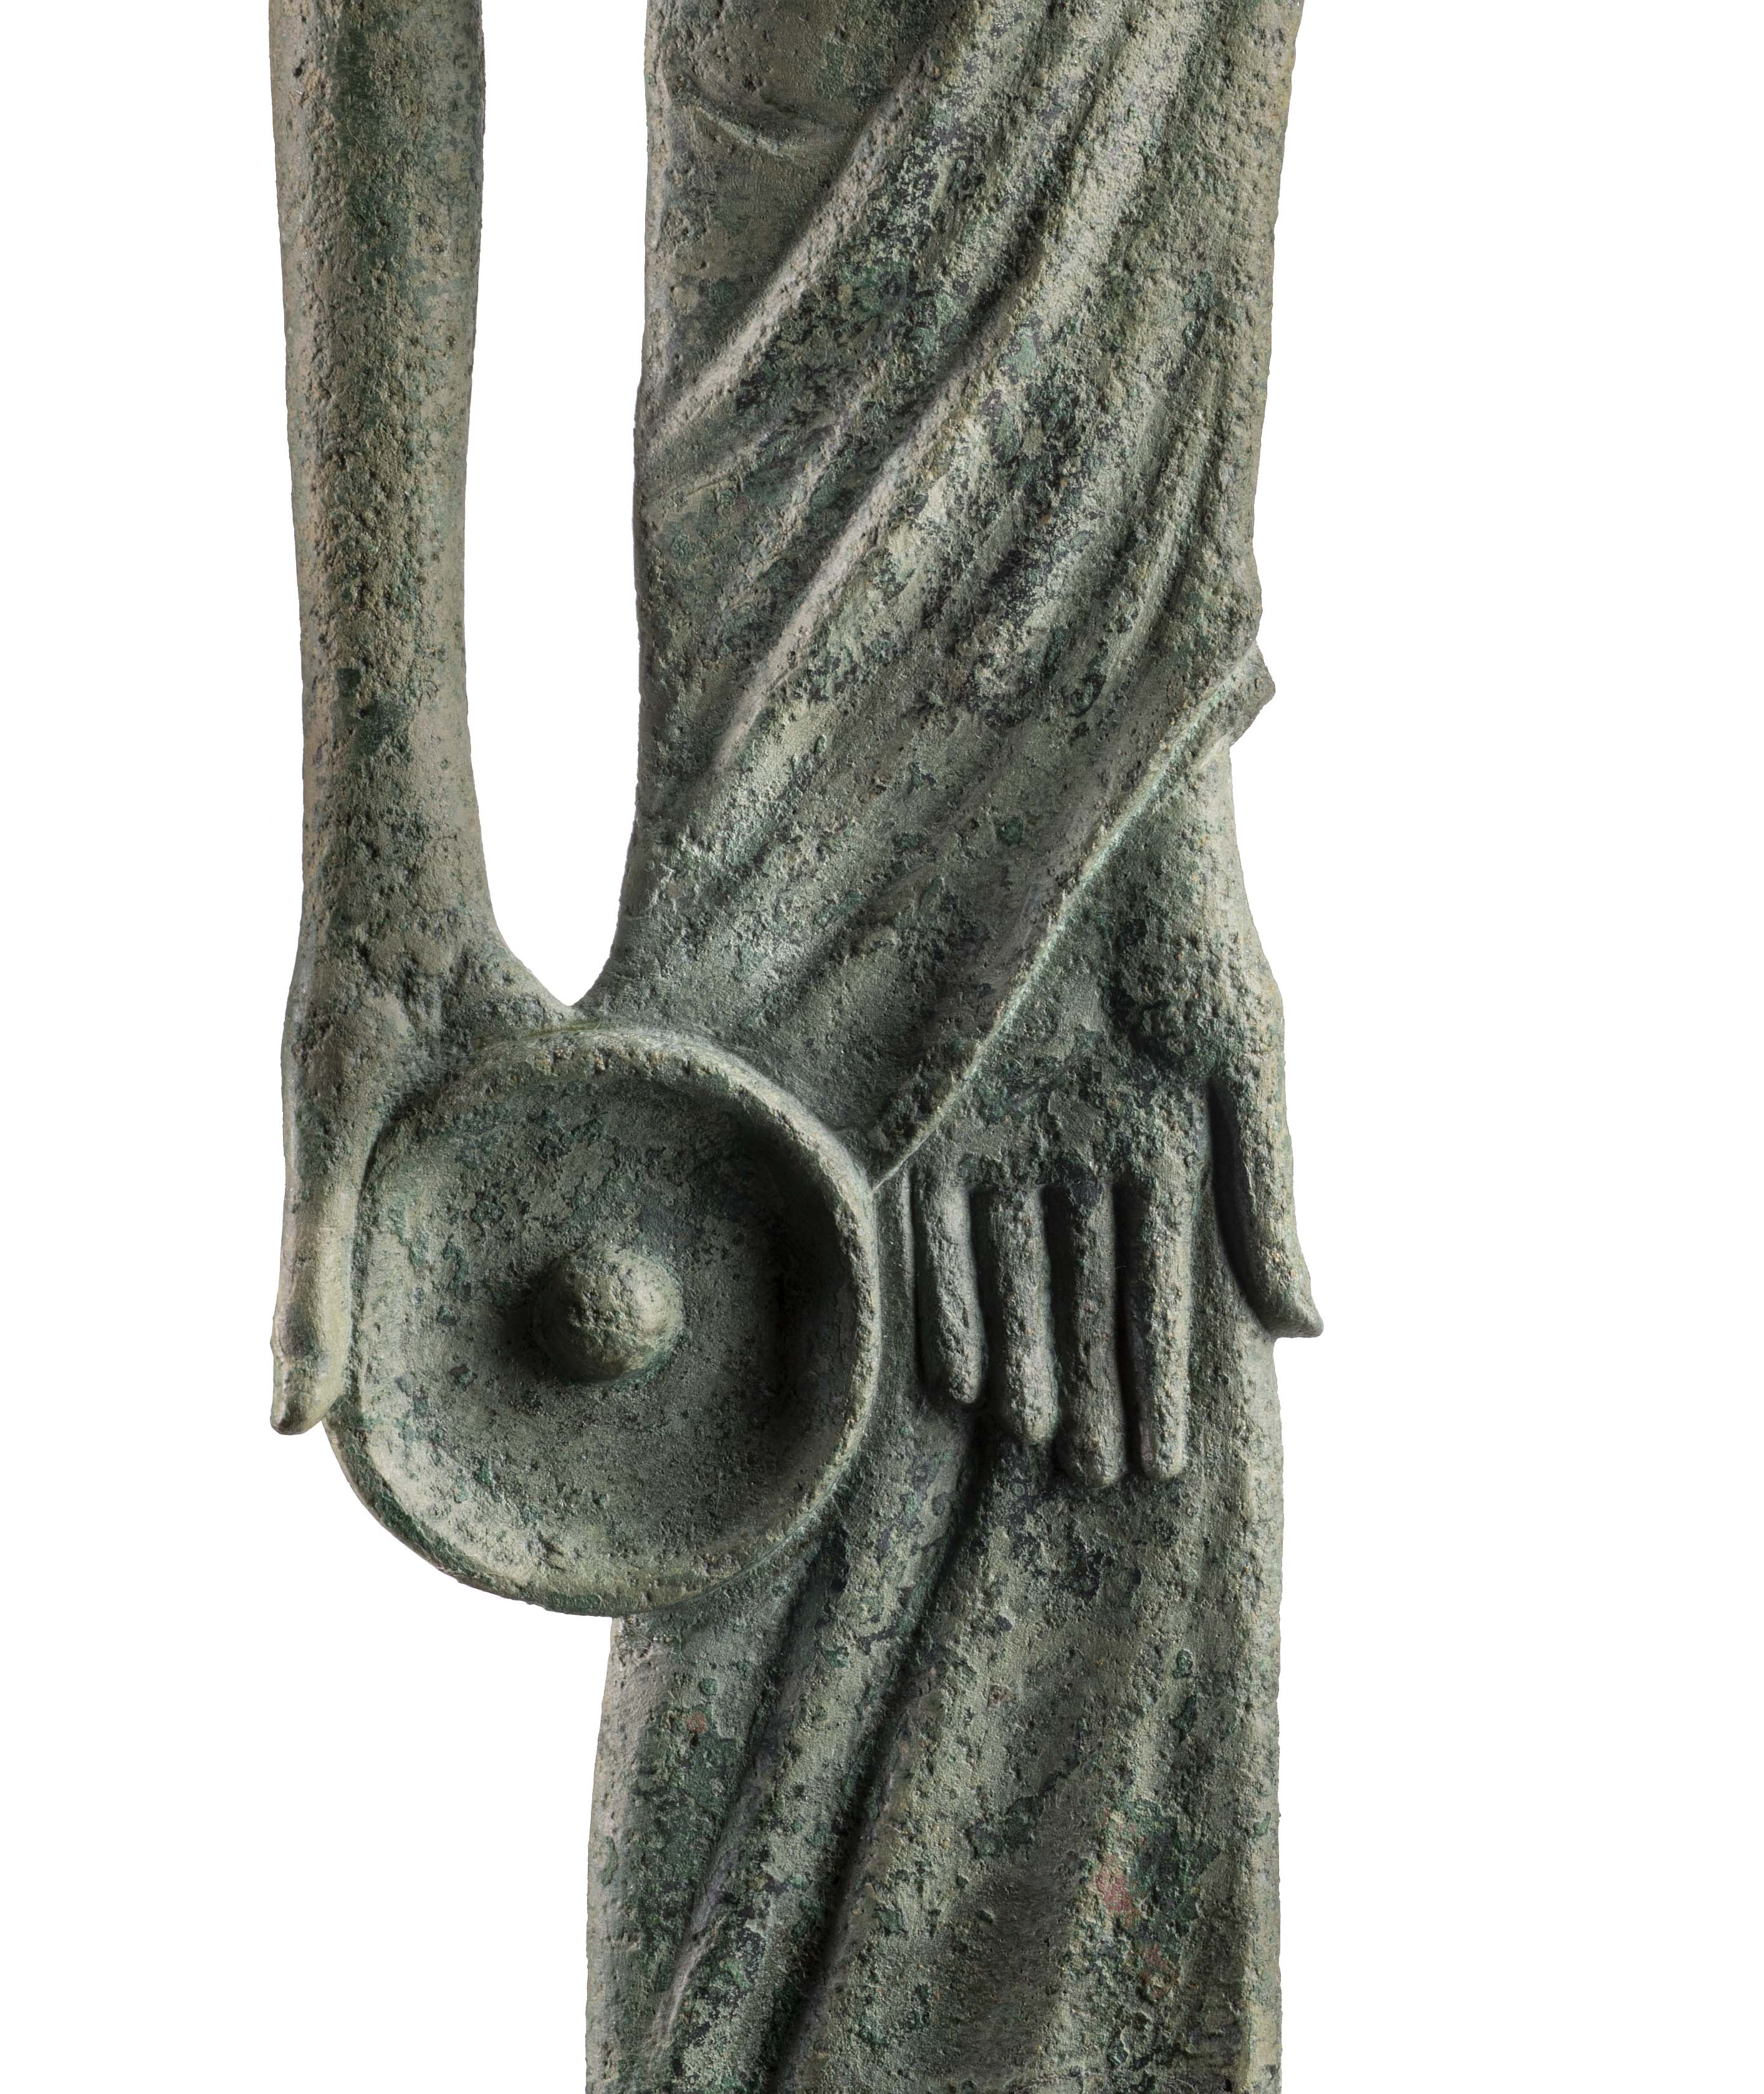 Arte etrusca, Ombra di San Gimignano, dettaglio
